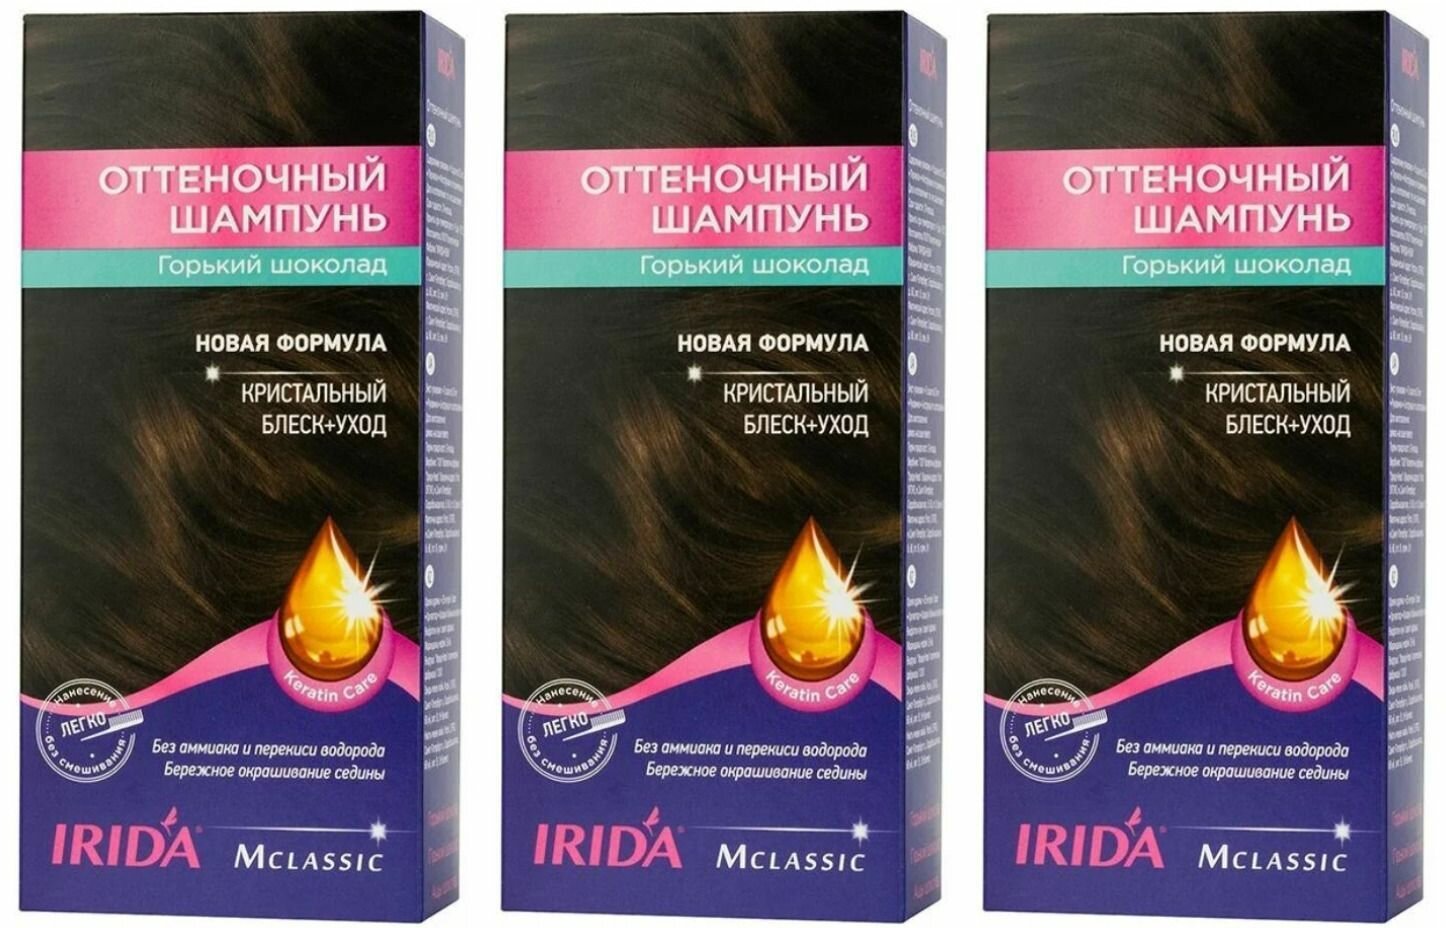 IRIDA Оттеночный шампунь, Горький шоколад, 75 мл, 3 шт